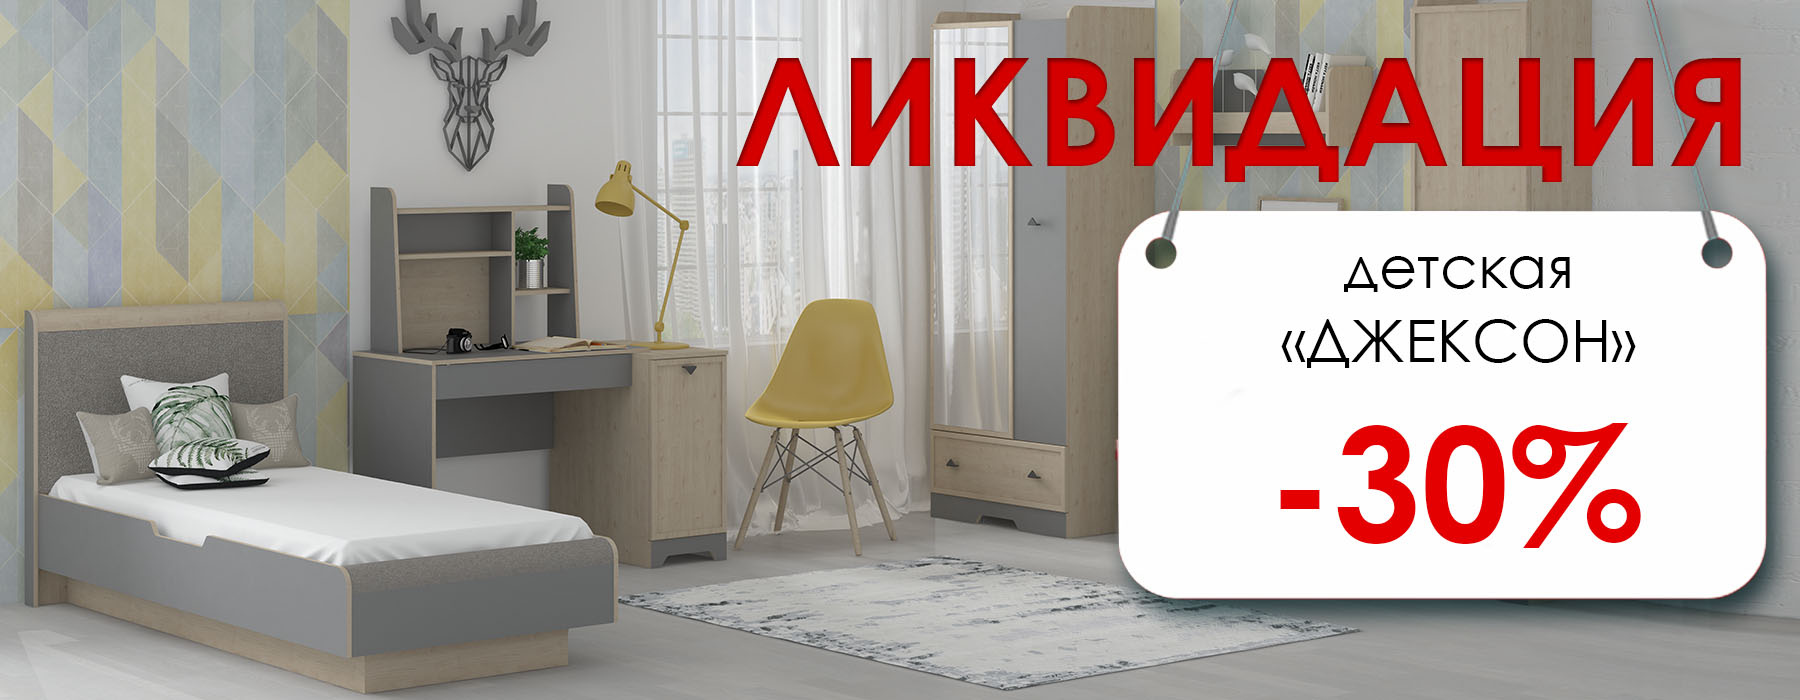 Мебель Магазин Иваново Официальный